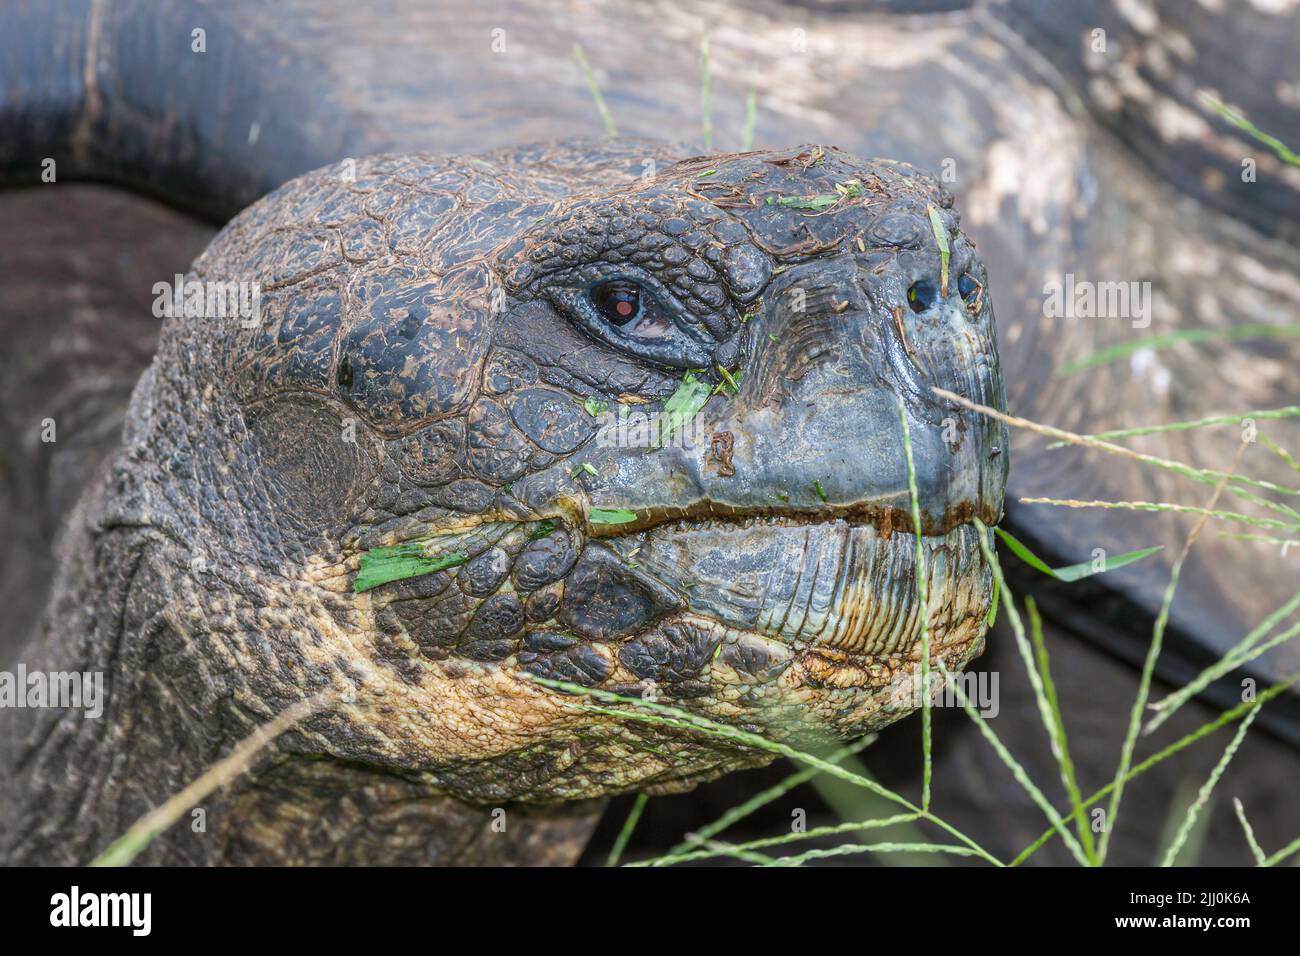 A Galapagos giant tortoise, Geochelone elephantopus, in a grassy field on Santa Cruz Island, Galapagos Archipelago, Ecuador Stock Photo